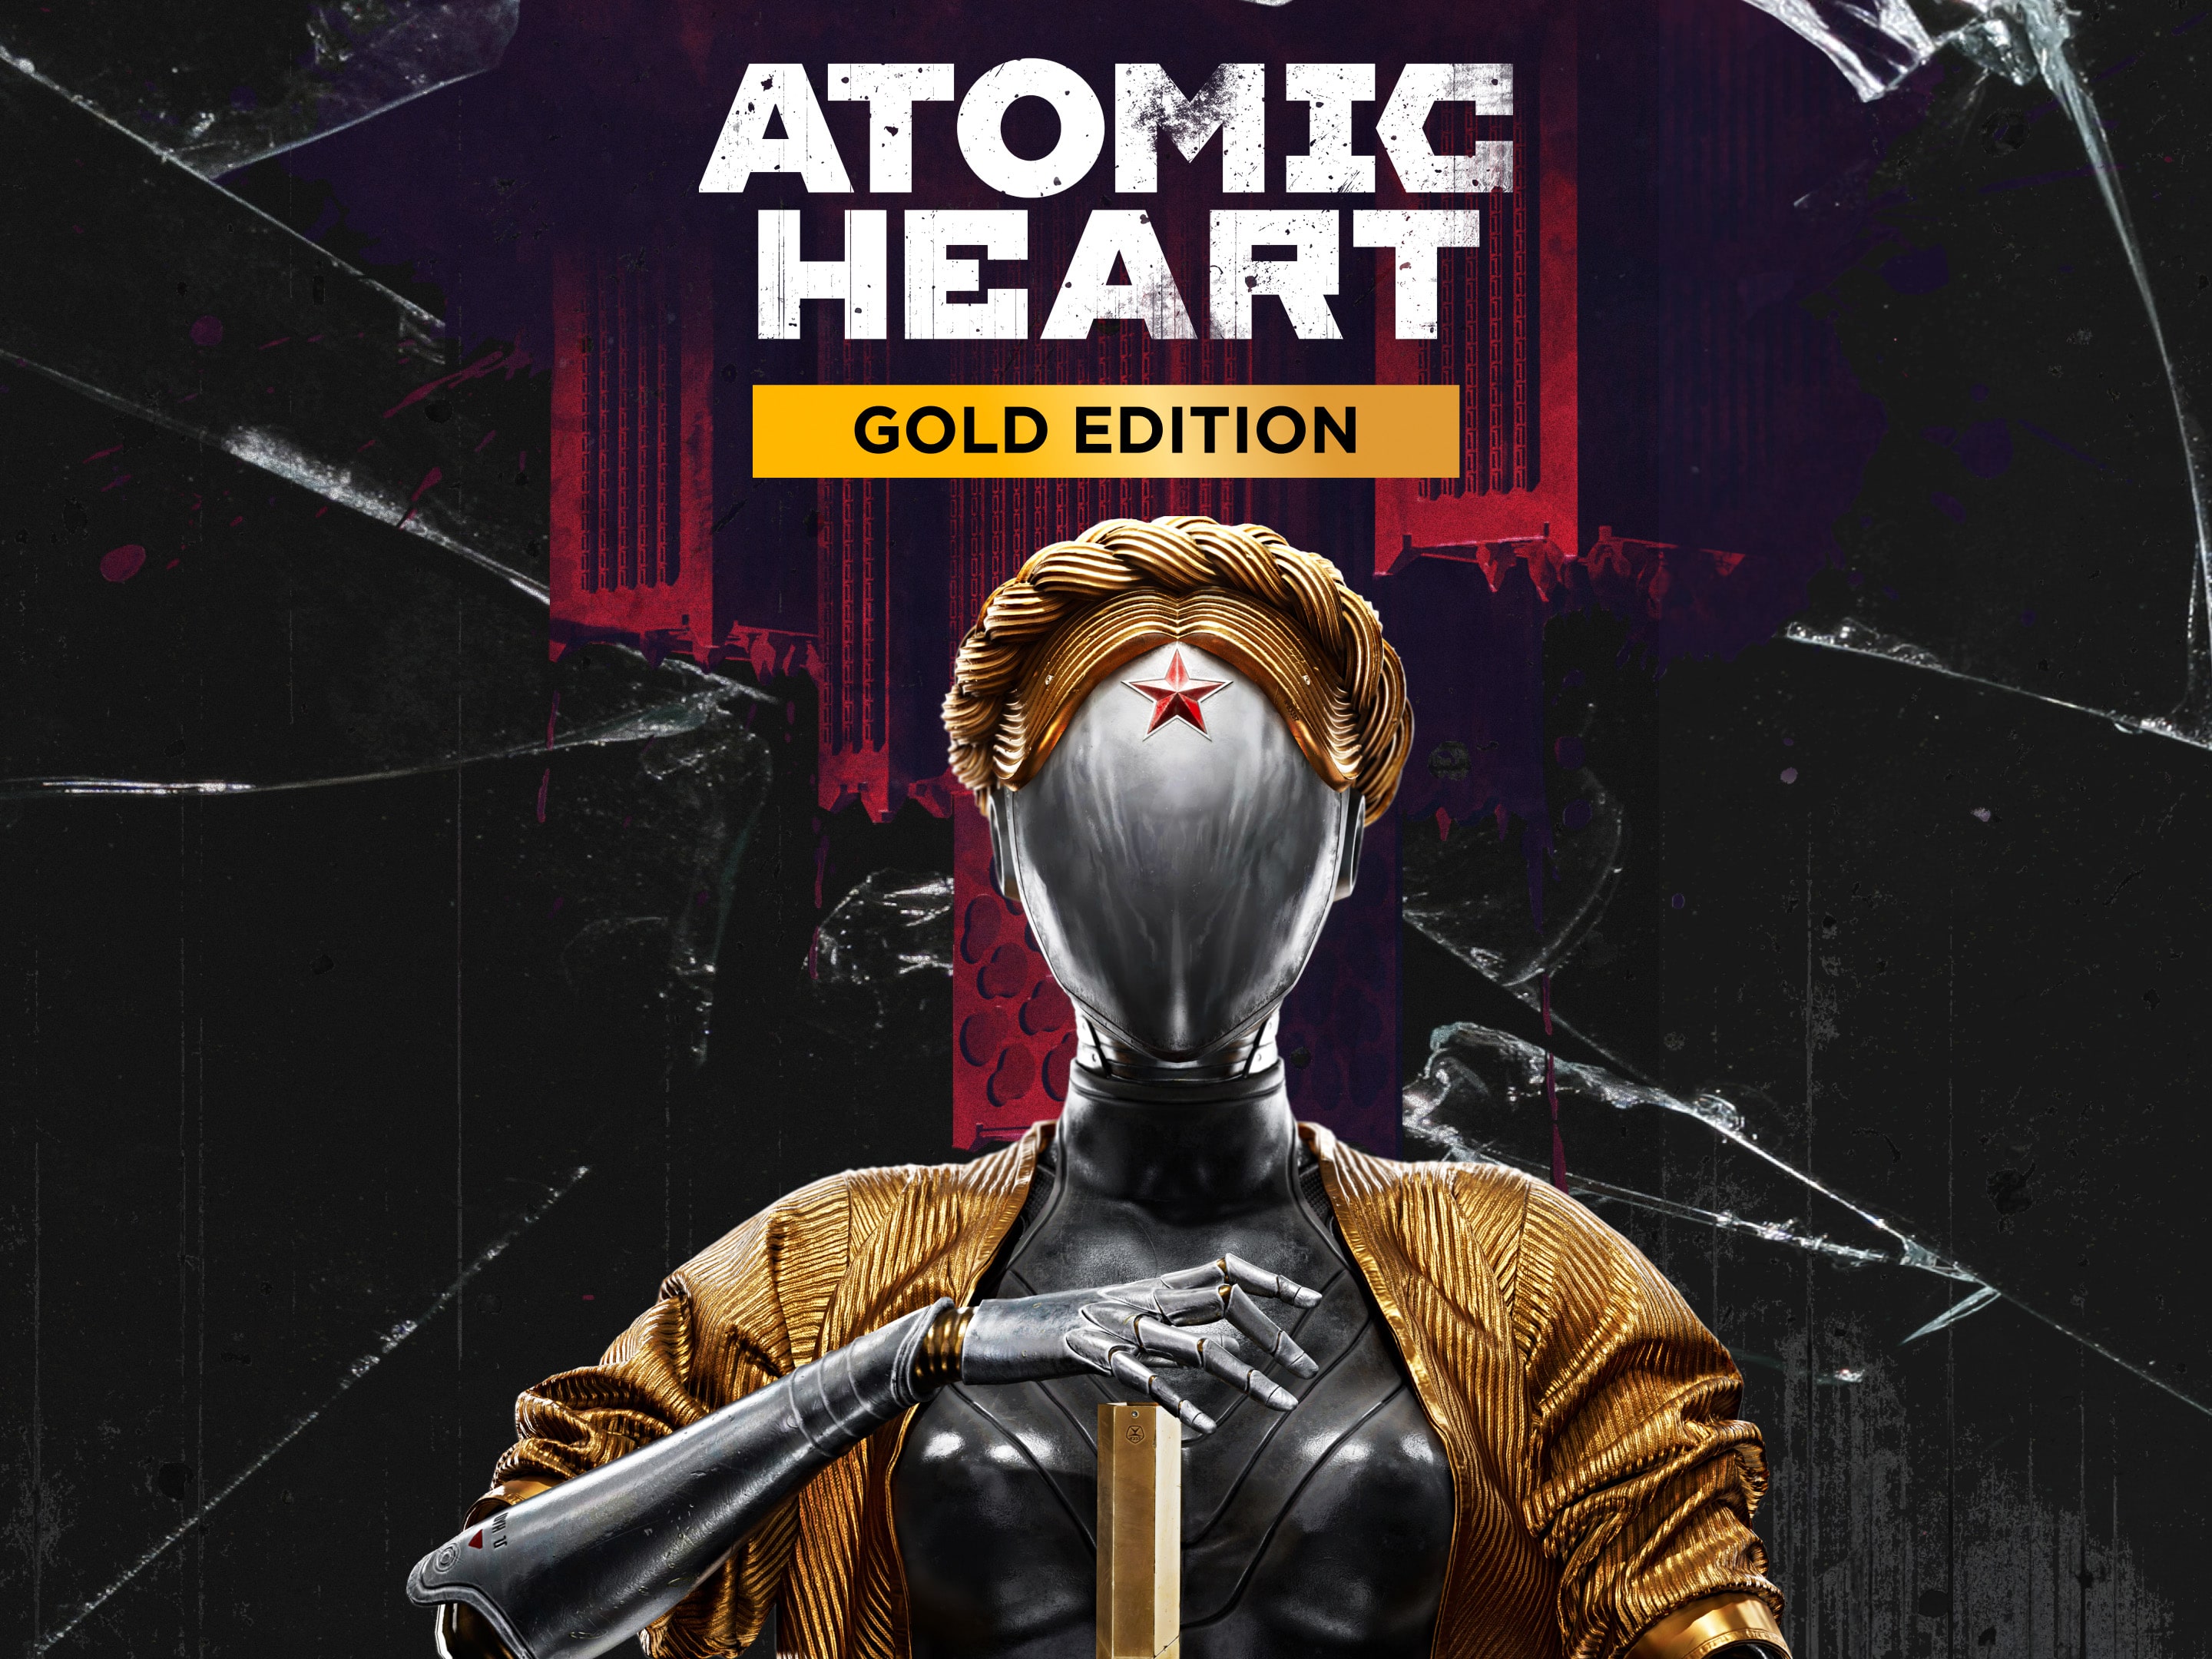 Atomic Heart - Impressões no PS4 - PSX Brasil